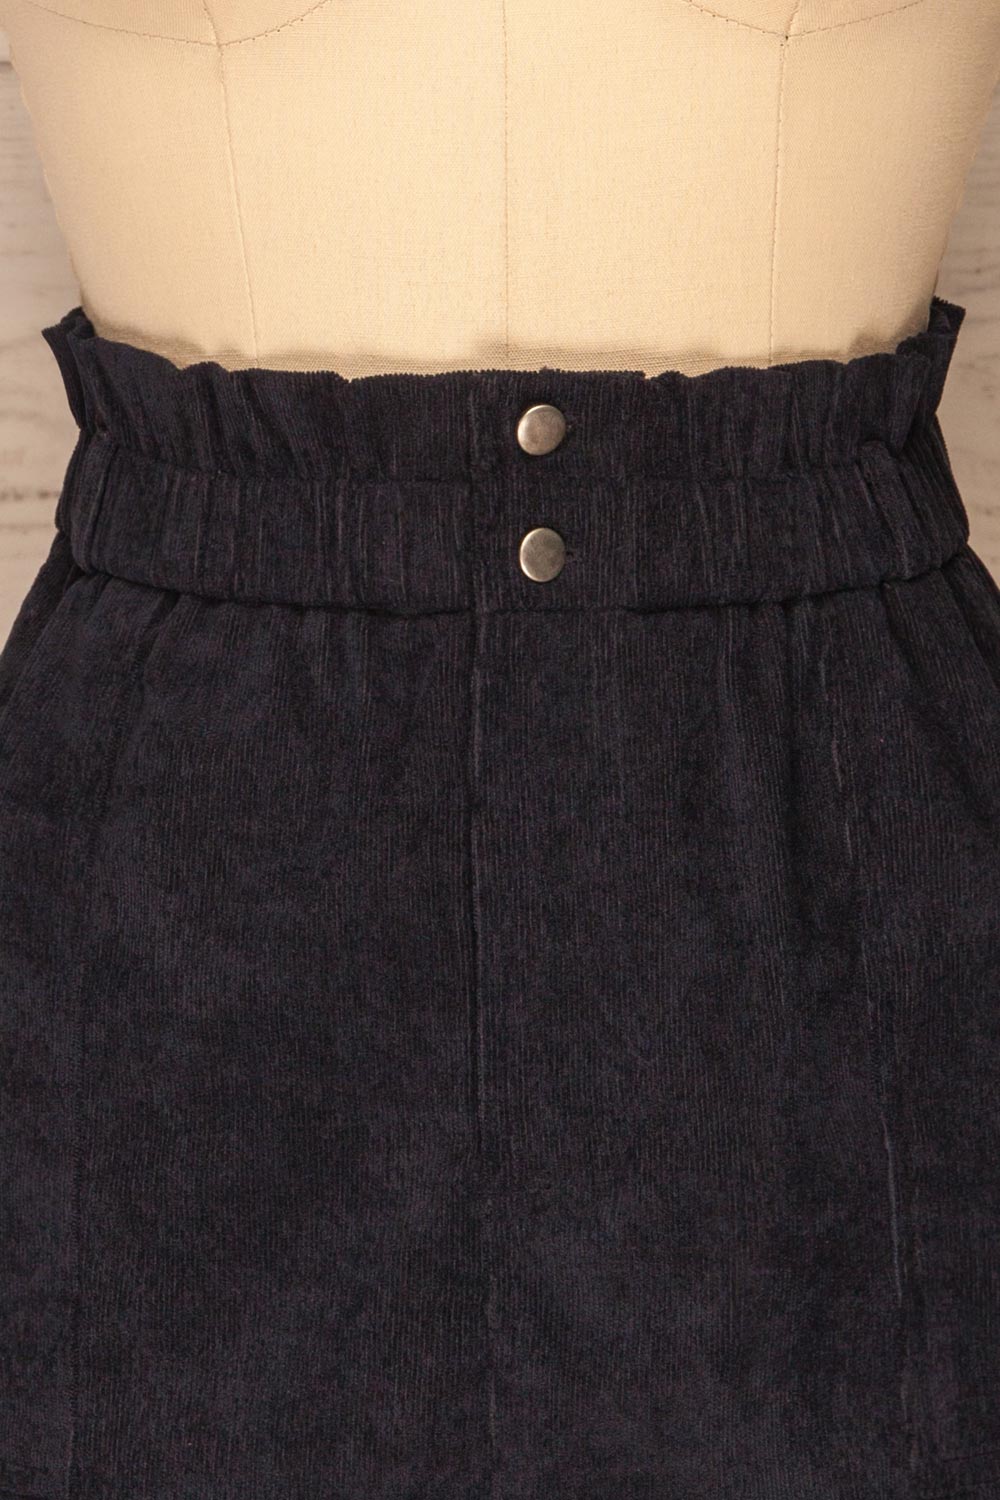 Loxley Navy Blue Corduroy Mini Skirt | La Petite Garçonne front close-up